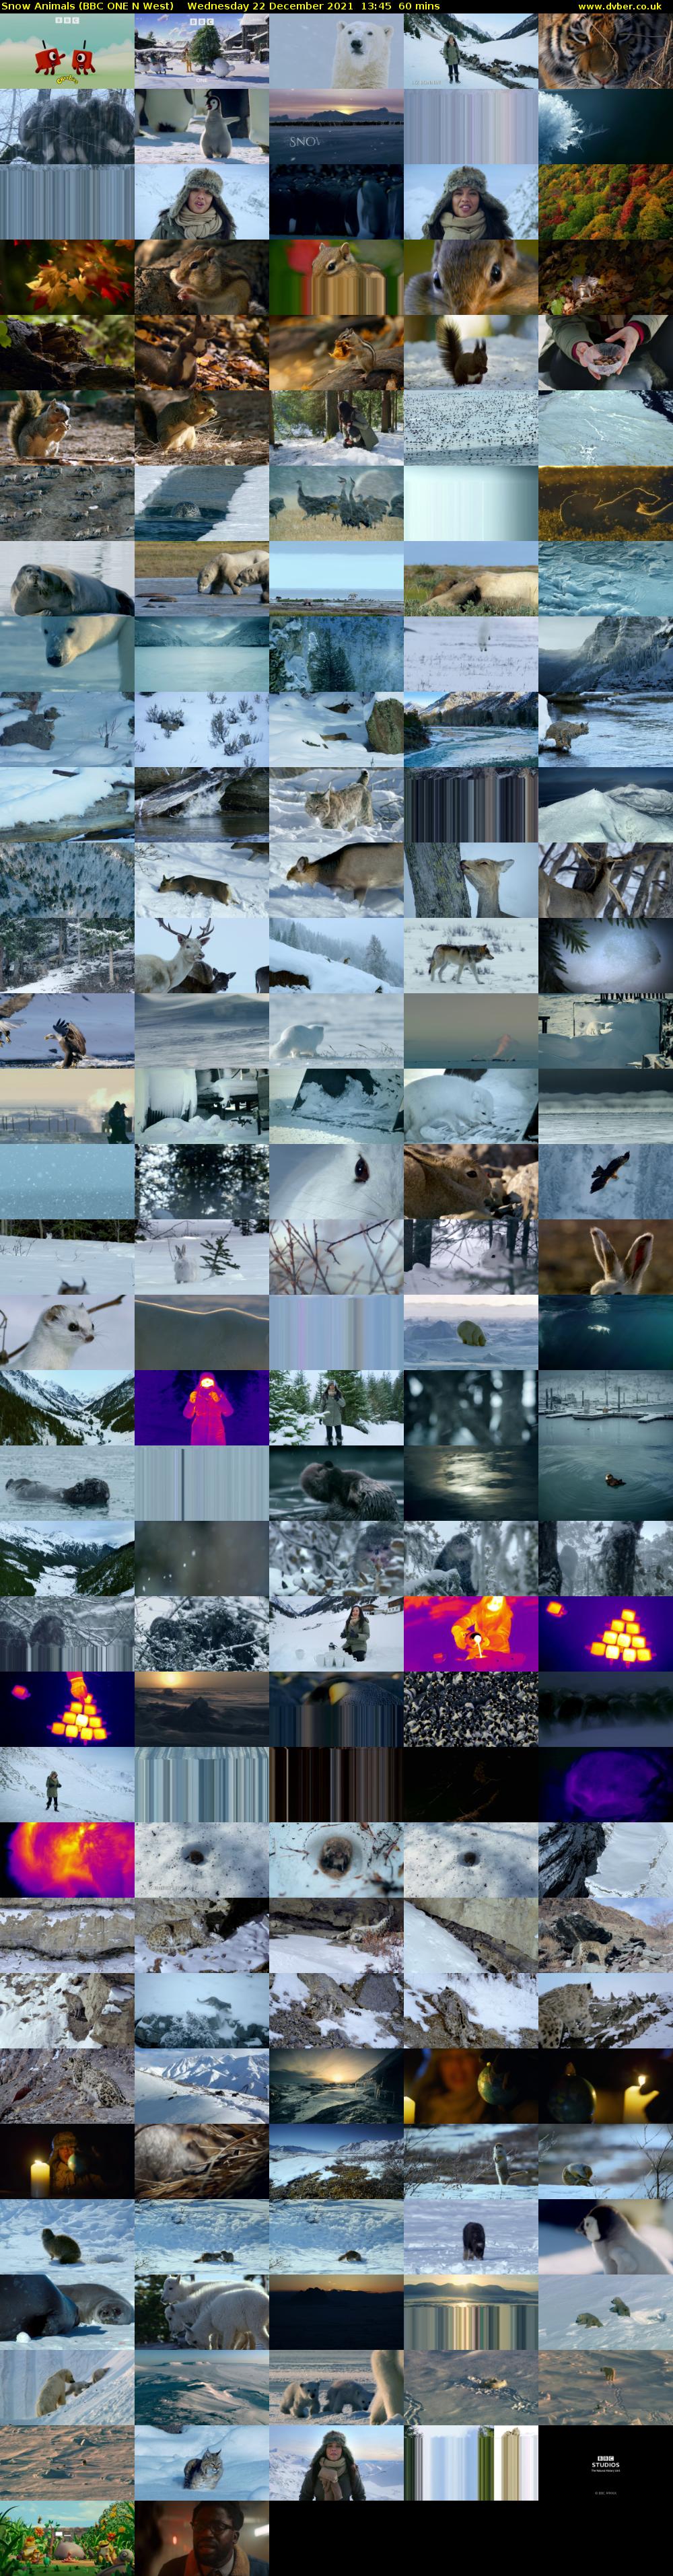 Snow Animals (BBC ONE N West) Wednesday 22 December 2021 13:45 - 14:45